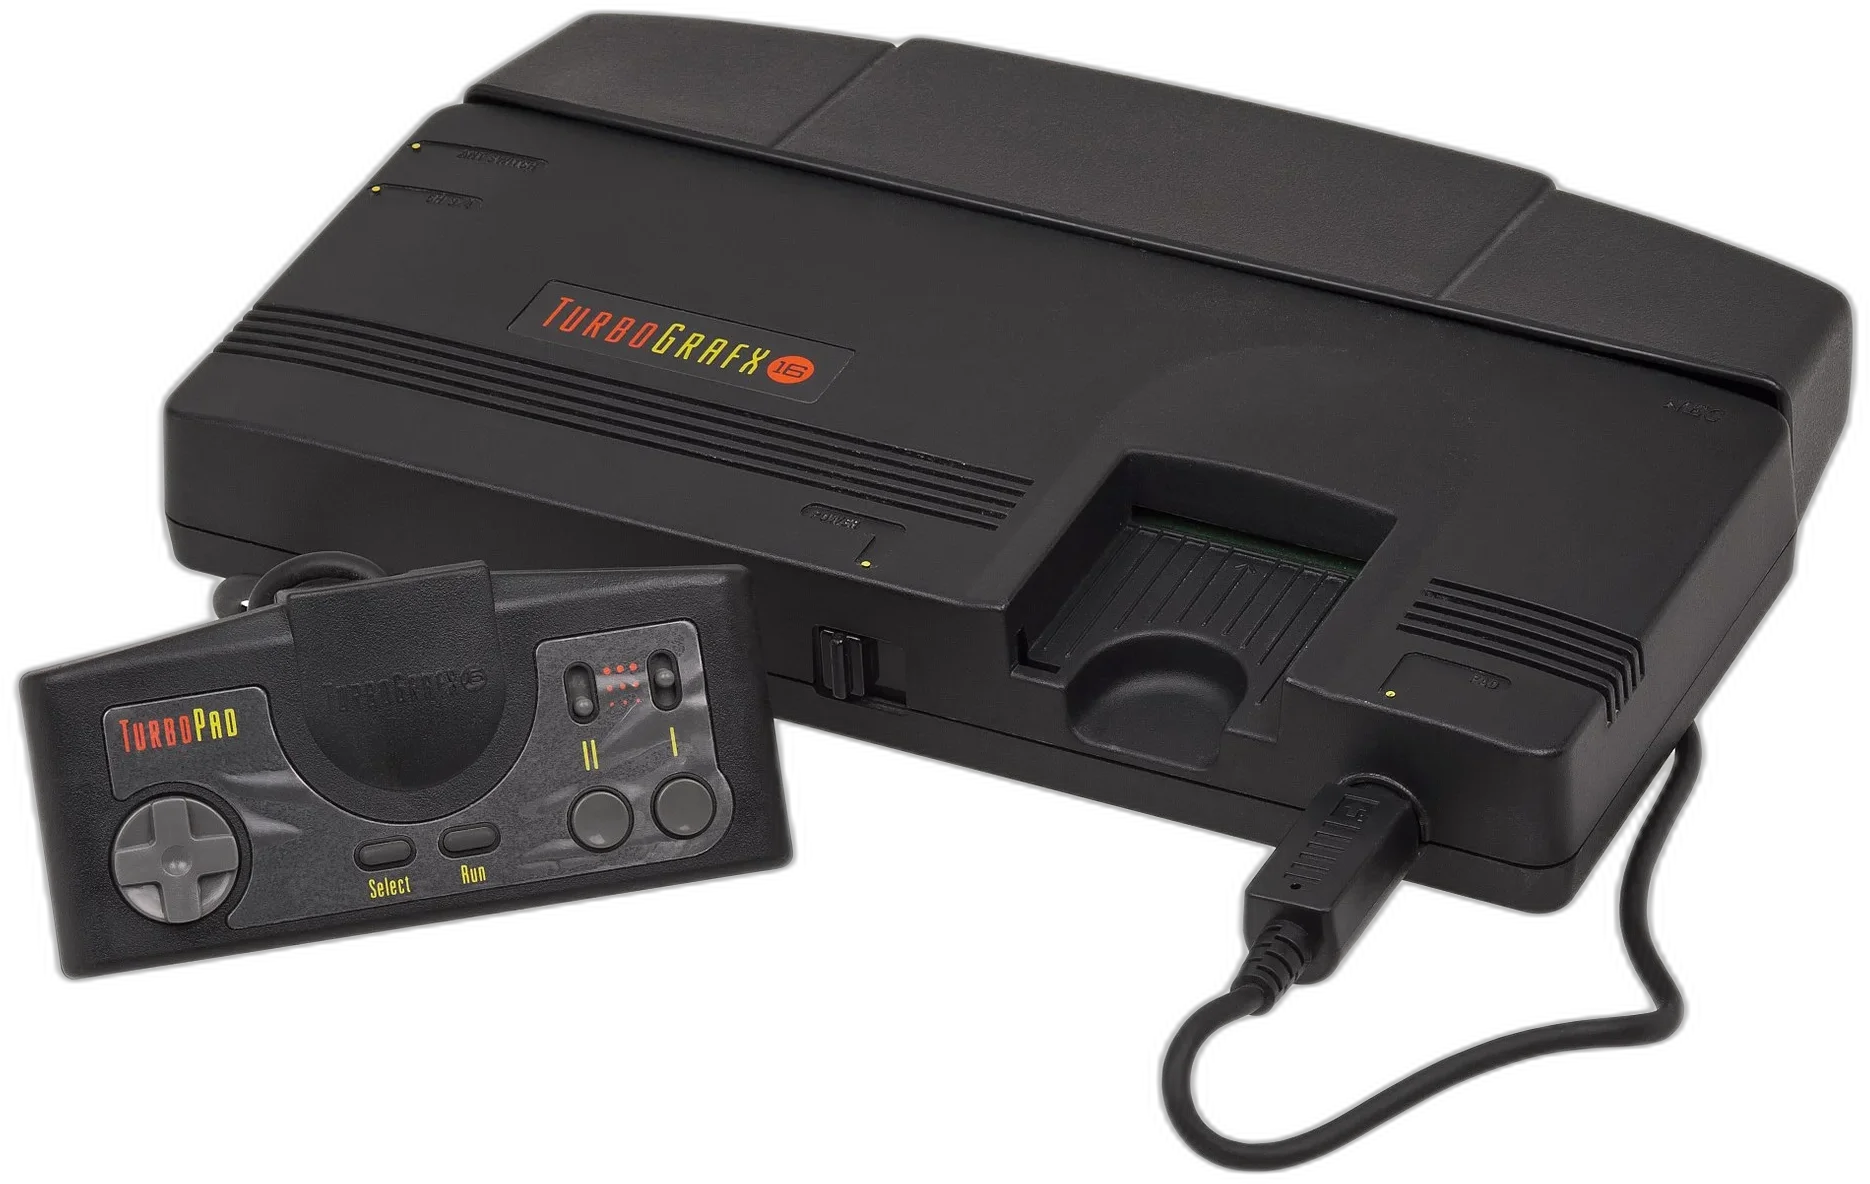  Nec TurboGrafx 16 Console [US]